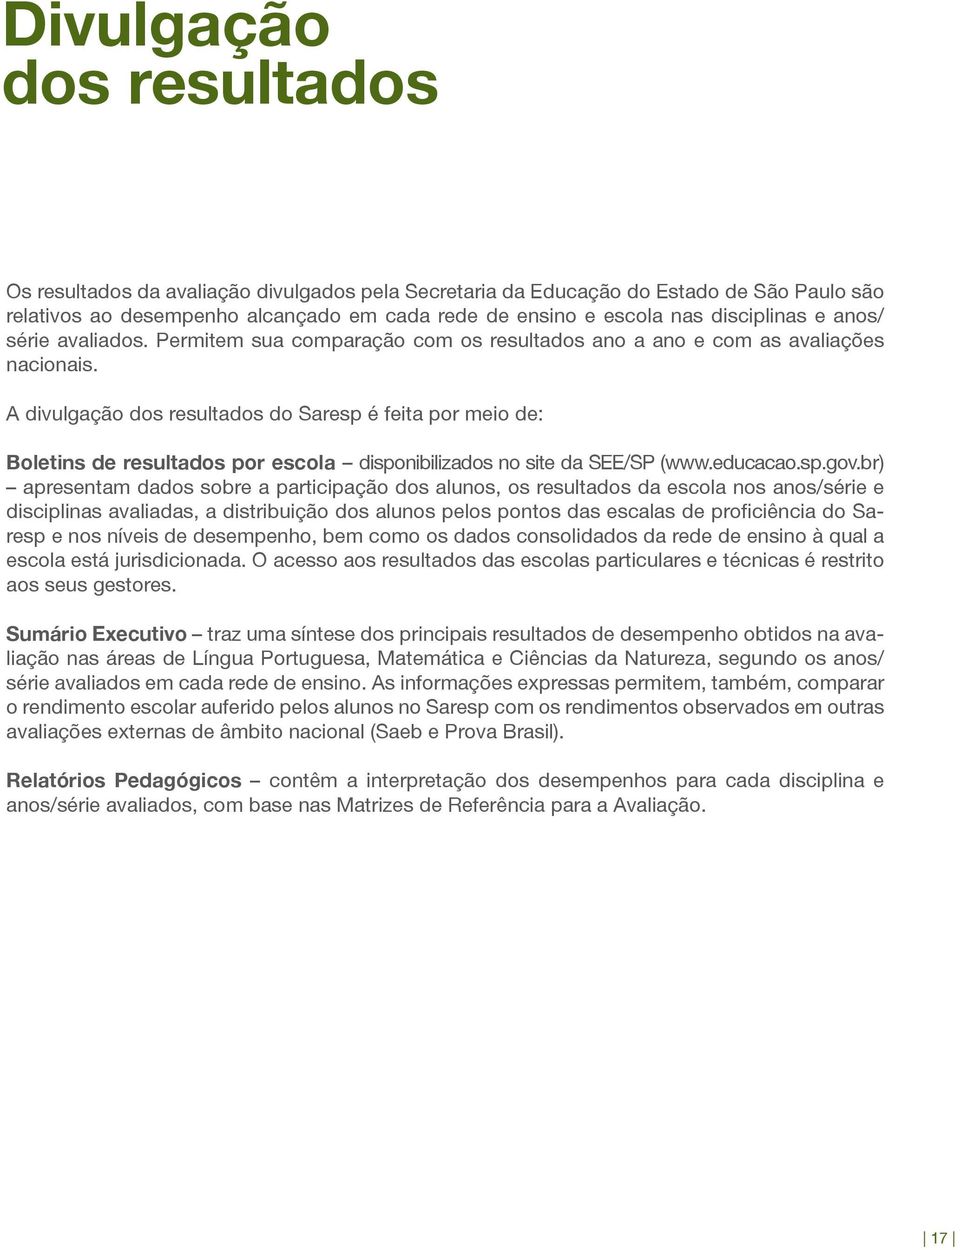 A divulgação dos resultados do Saresp é feita por meio de: Boletins de resultados por escola disponibilizados no site da SEE/SP (www.educacao.sp.gov.